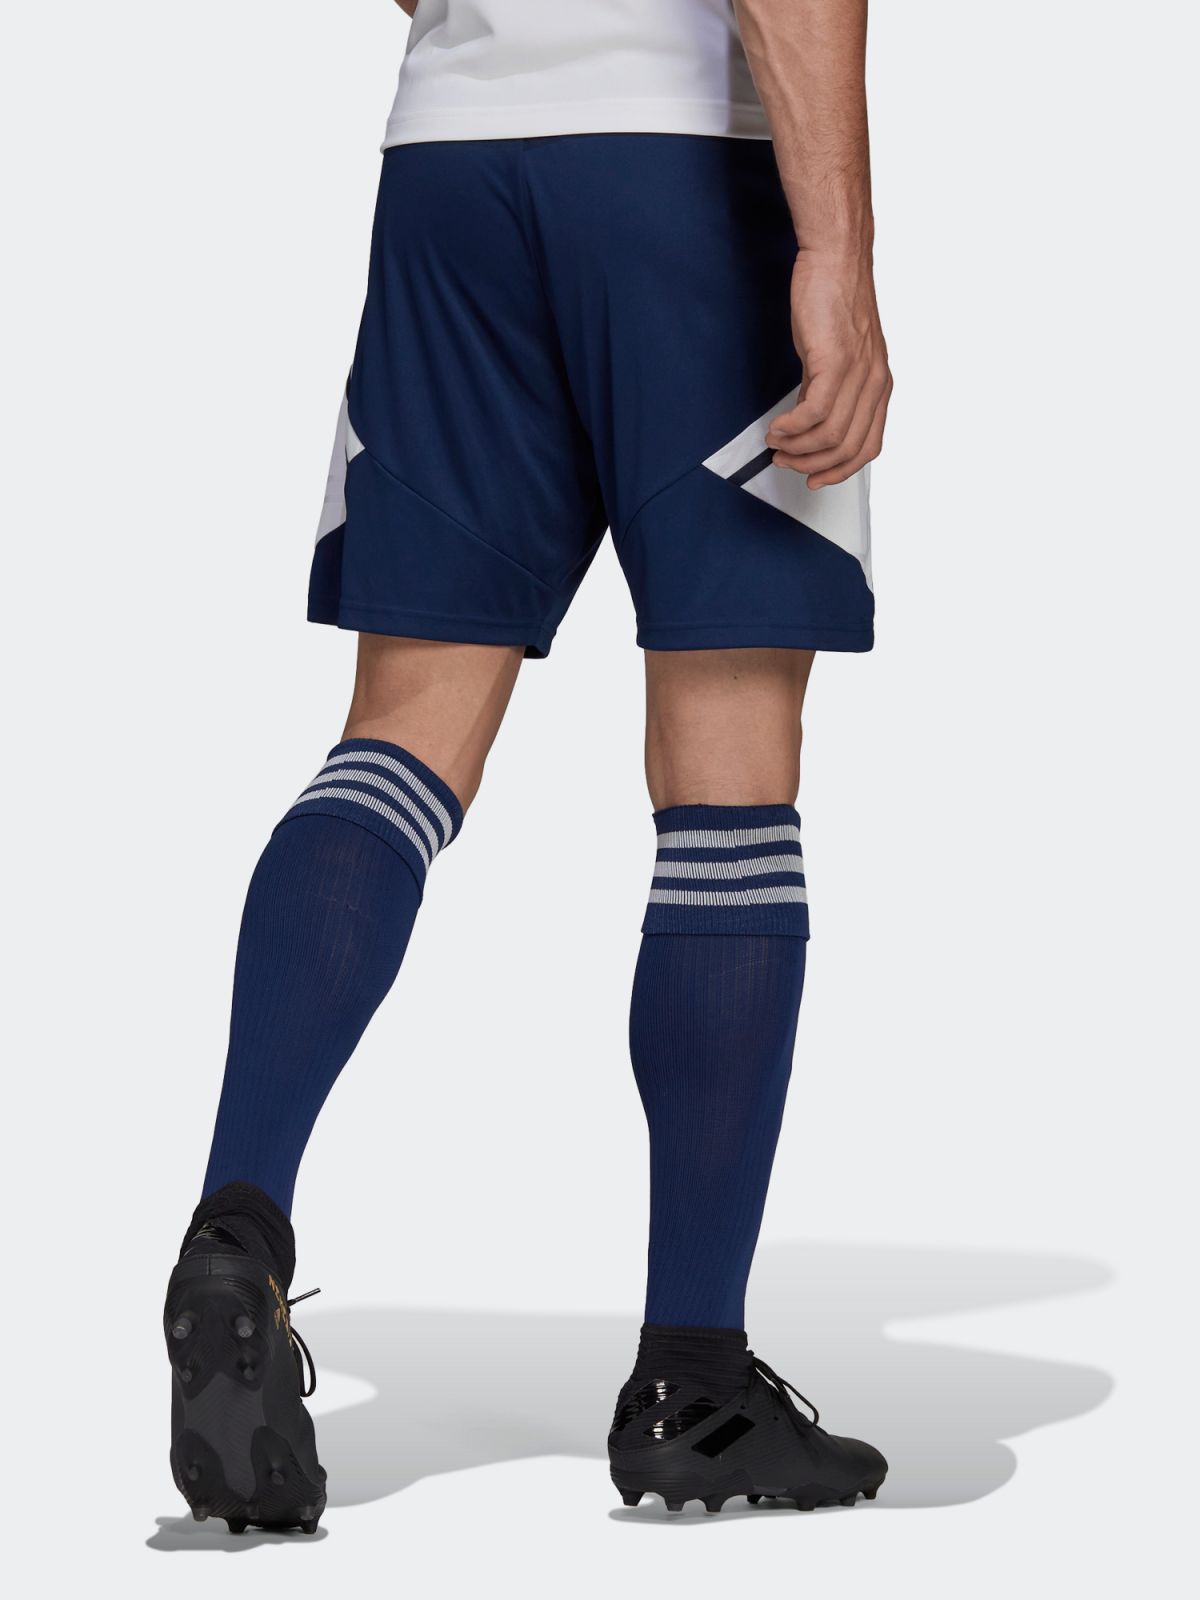  מכנסי כדורגל עם לוגו Condive 22 של ADIDAS Performance